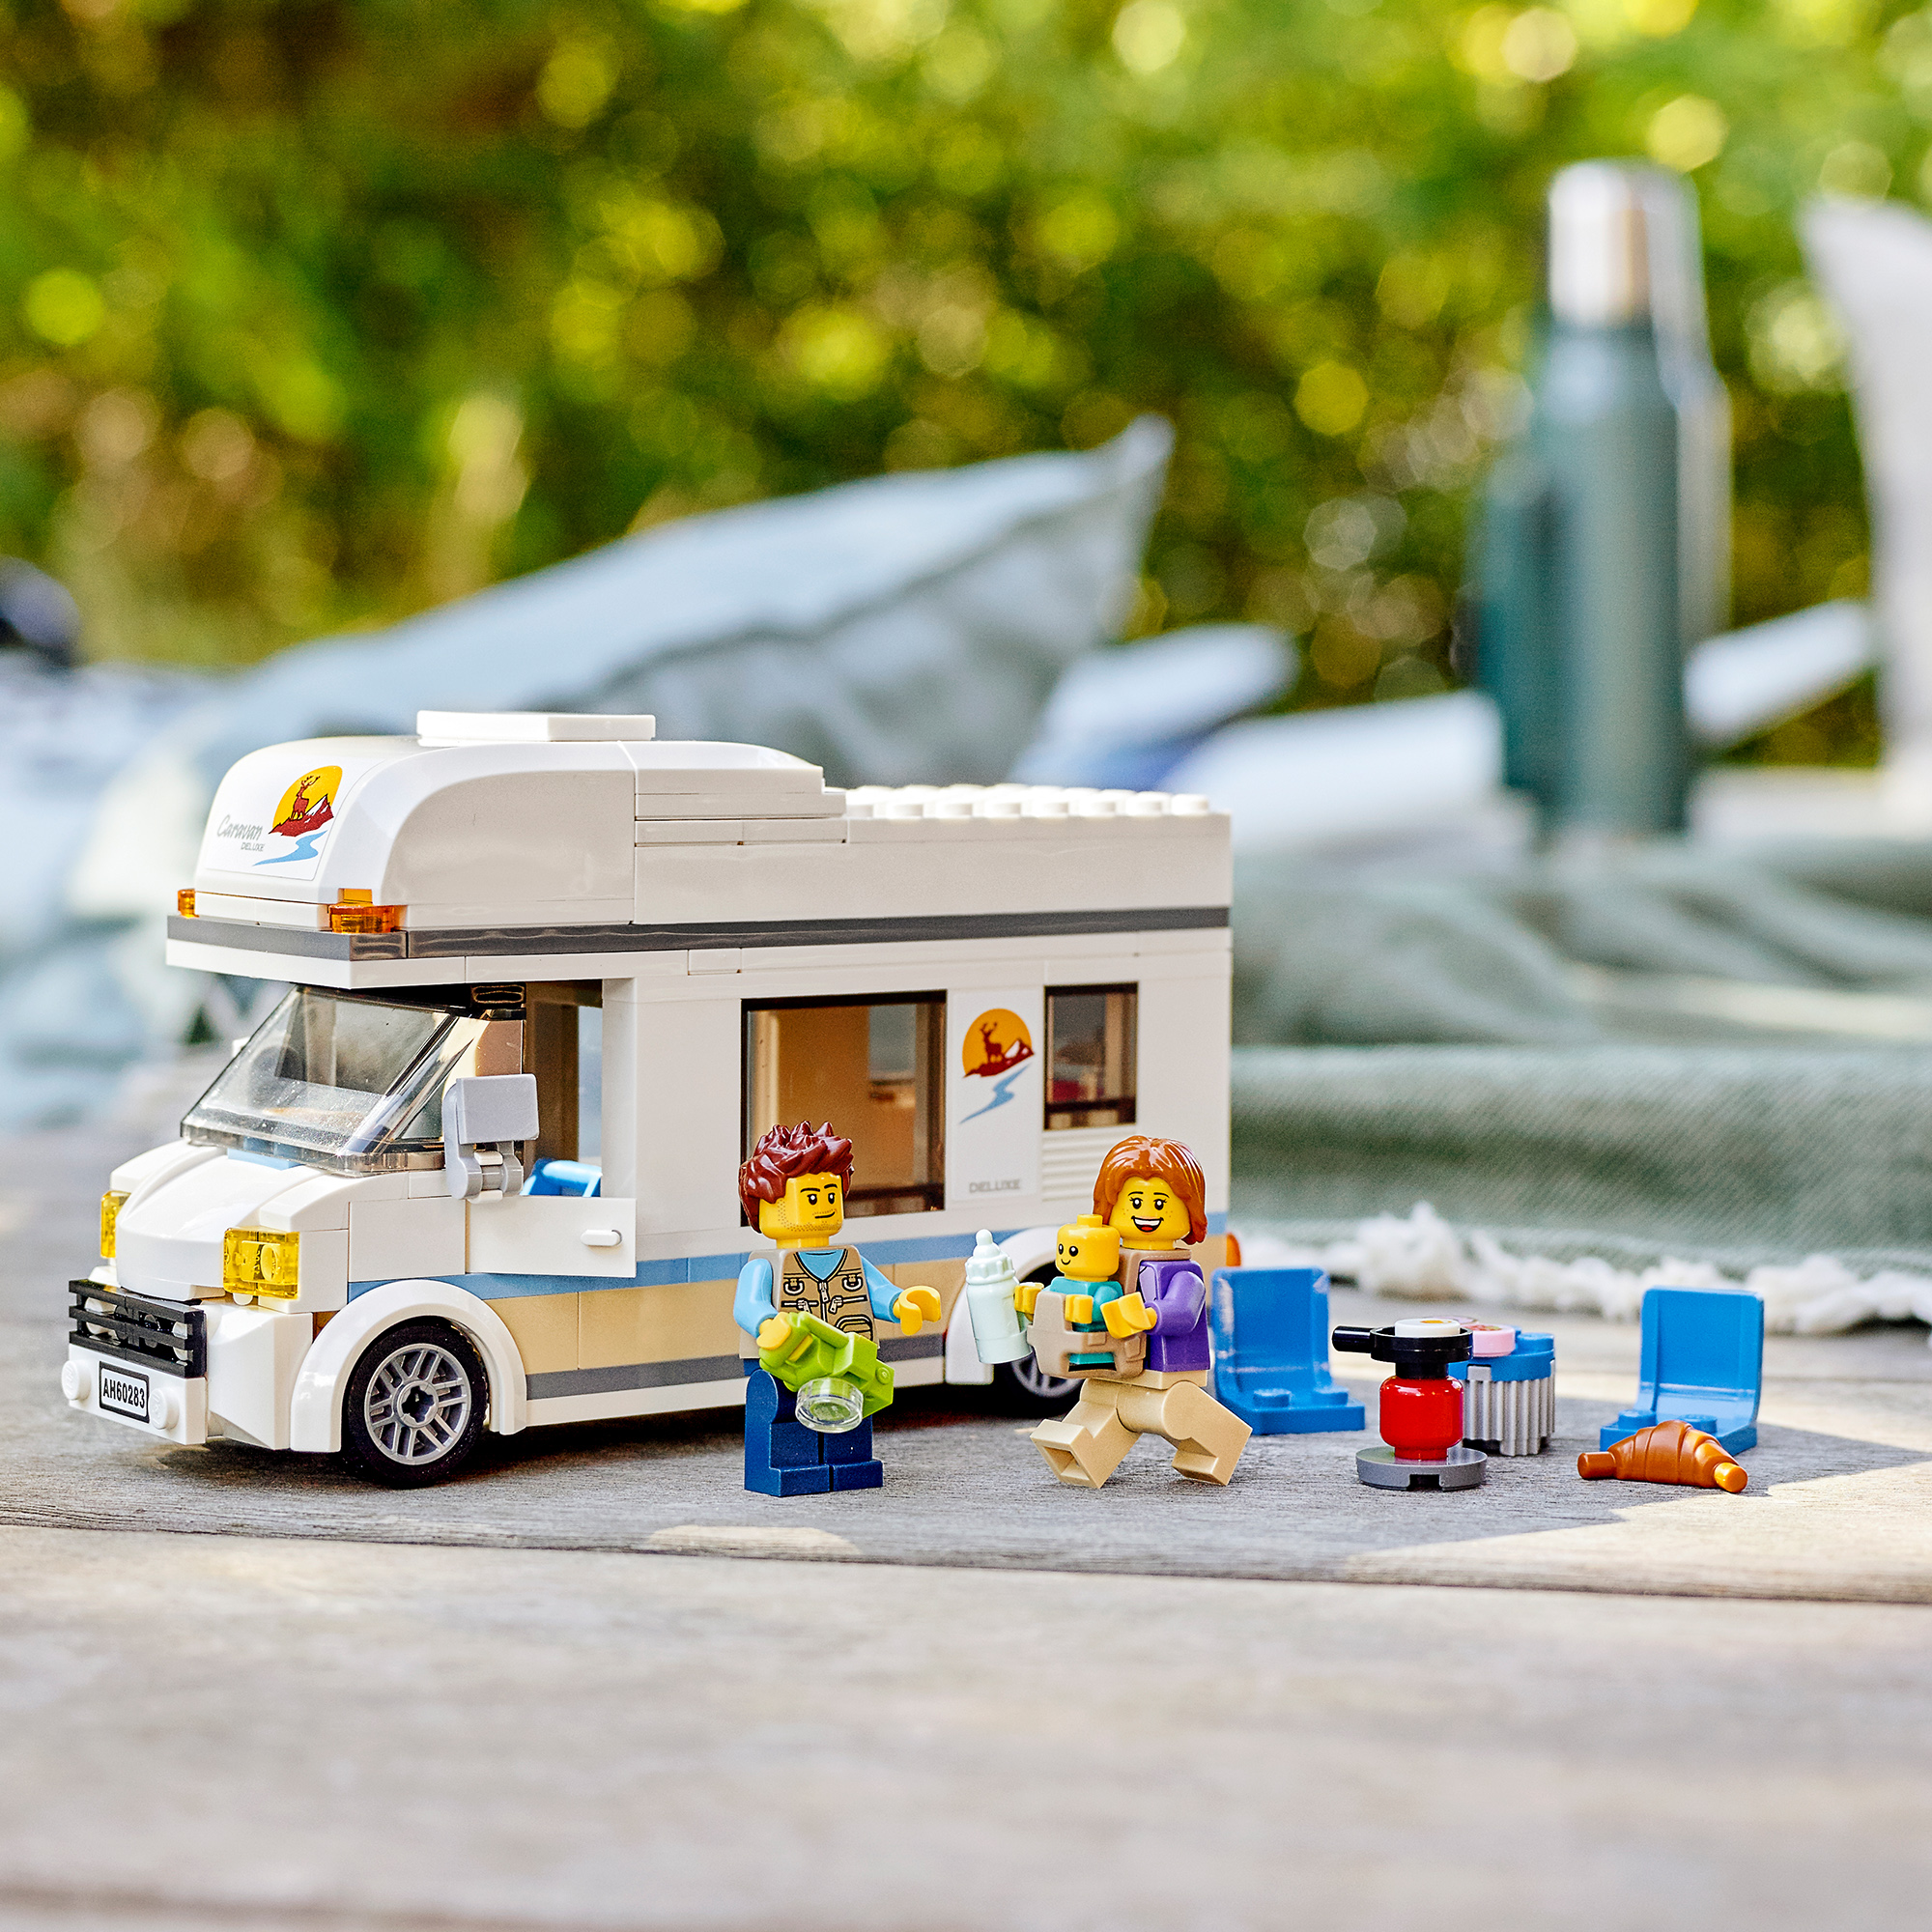 Lego city 60283 camper delle vacanze, set di costruzioni con roulotte giocattolo e minifigure, giochi per bambini, idee regalo - LEGO CITY, Lego